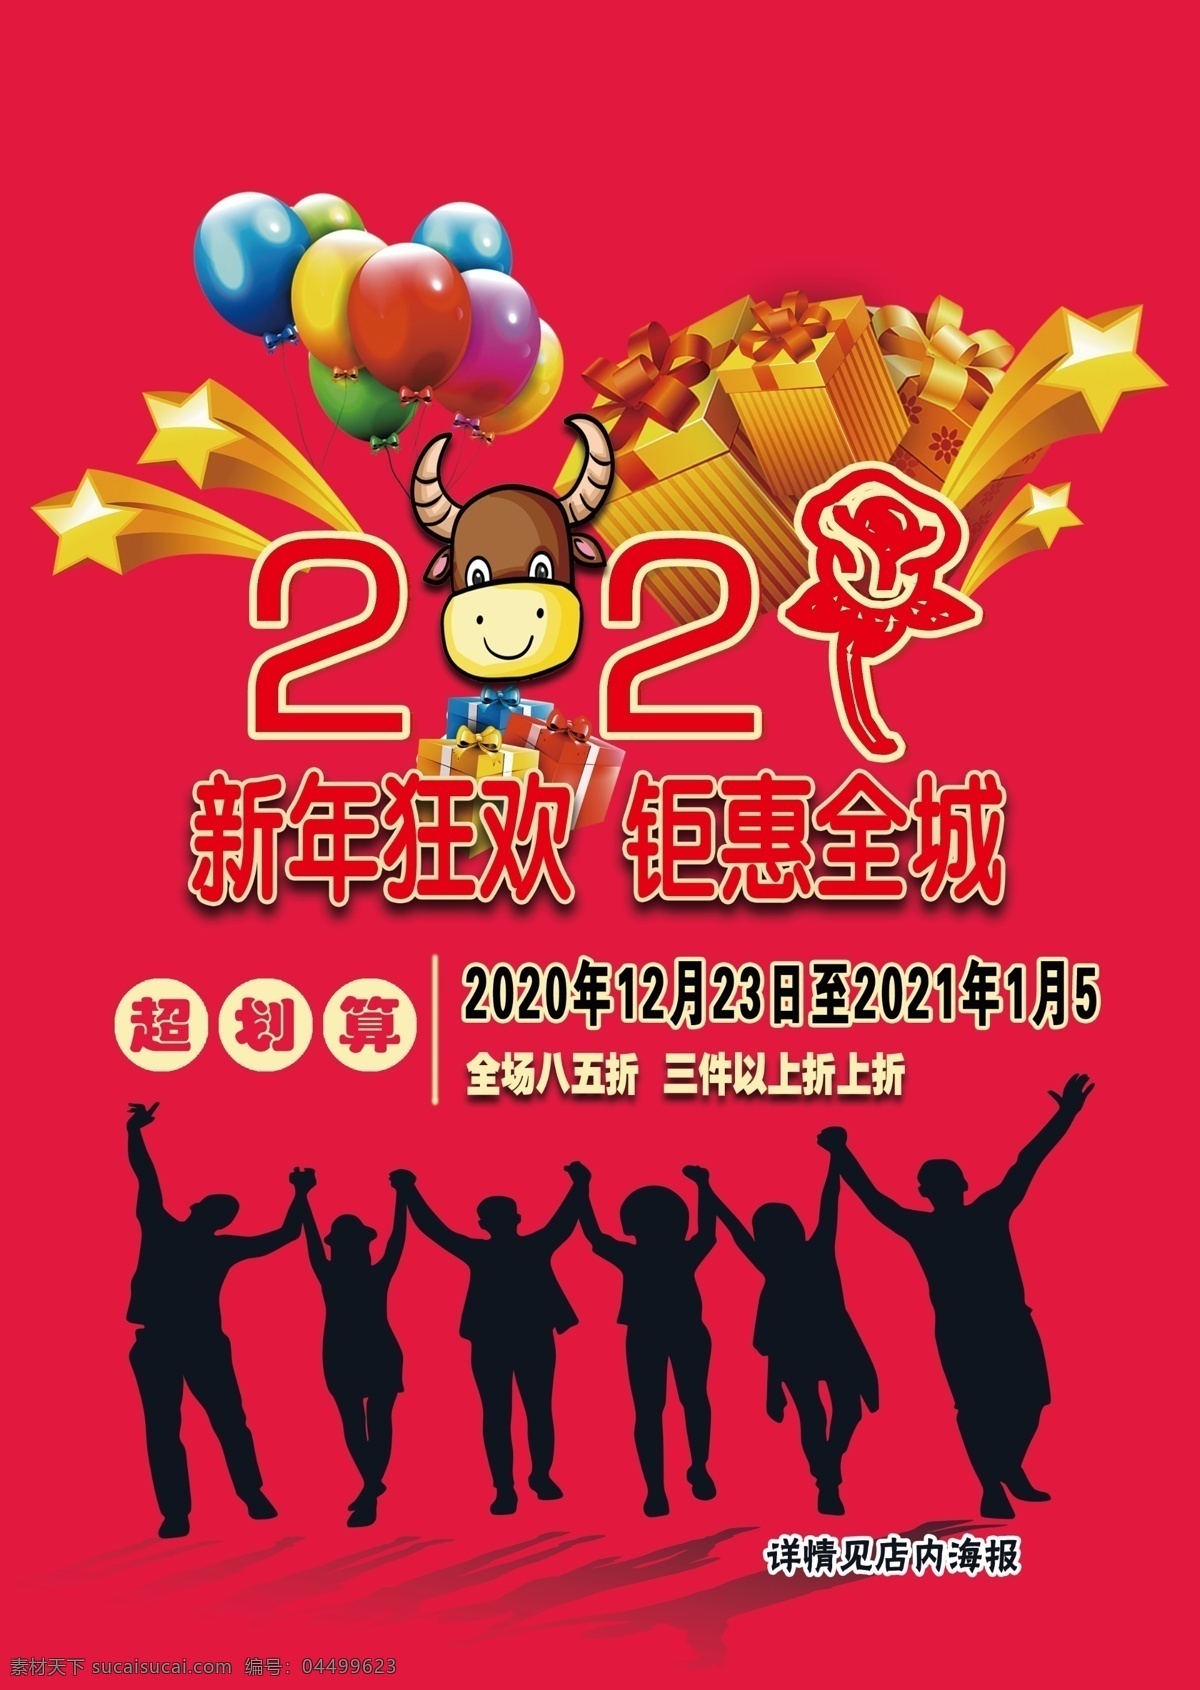 宣传单图片 dm单 红色 超市促销 商场促销 新年 礼品 牛 打折广告 折上折 2021 新年促销 气球 分层